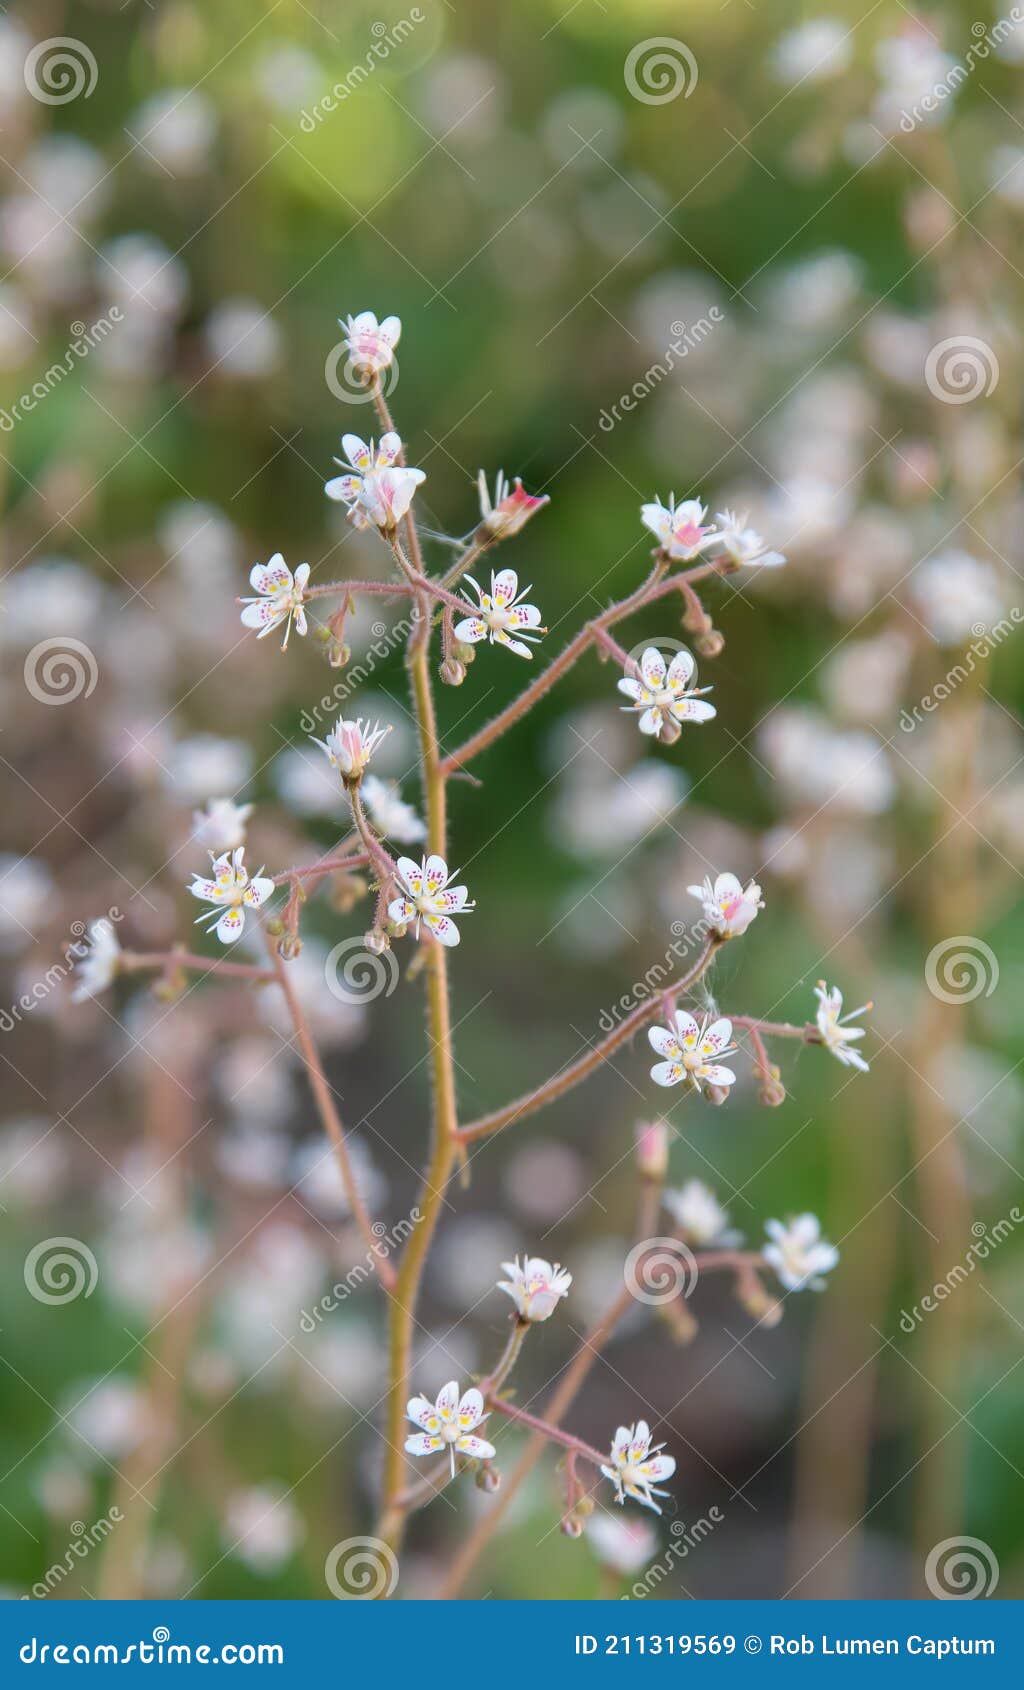 london pride, saxifraga x urbium, flowering